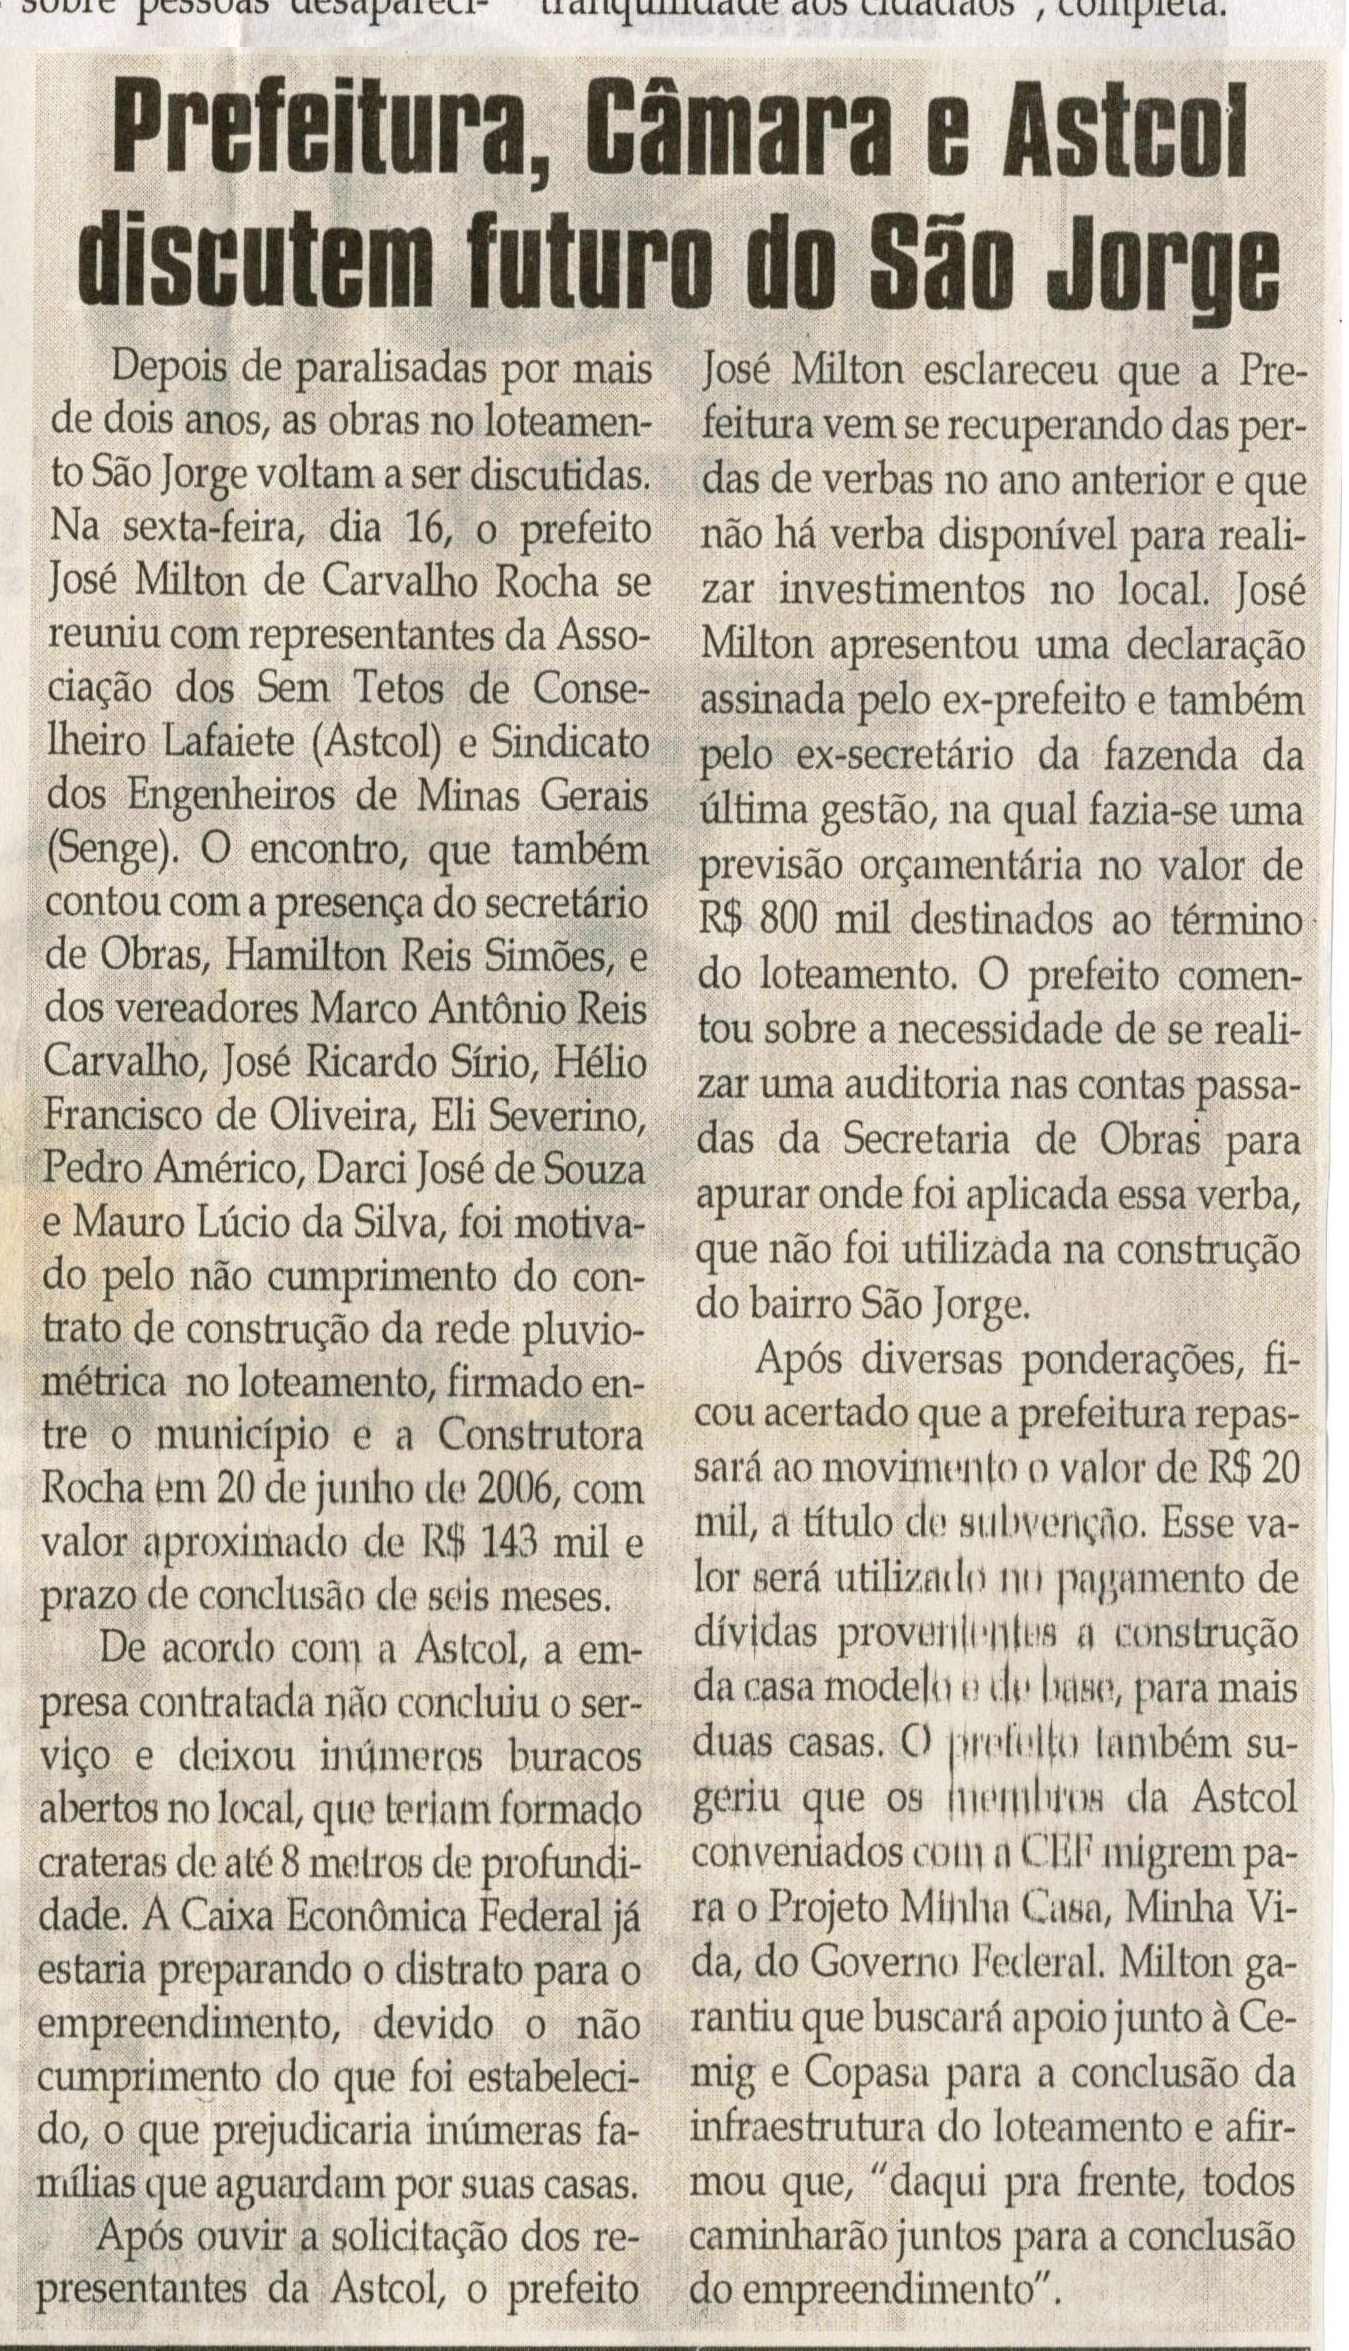 Prefeitura, Câmara e Astcol discutem futuro do São Jorge. Jornal Correio da Cidade, Conselheiro Lafaiete, 24 abr. 2010, p. 4.